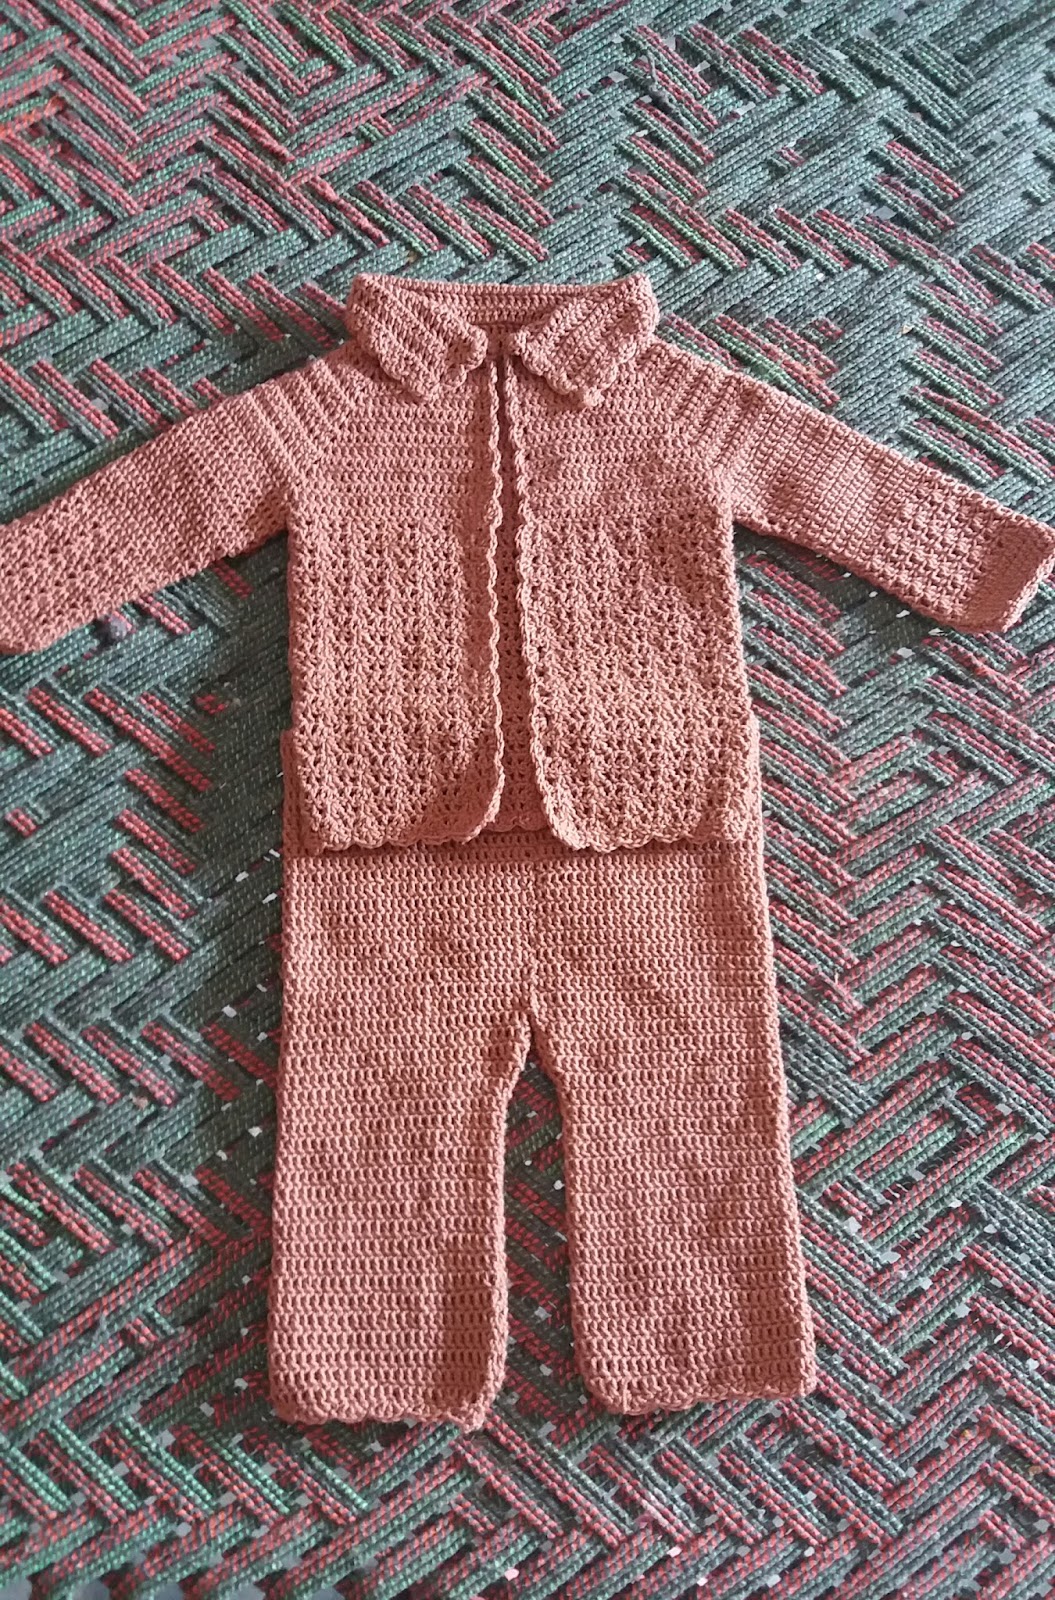 Crochet baby boy dress free pattern ⋆ Crochet Kingdom